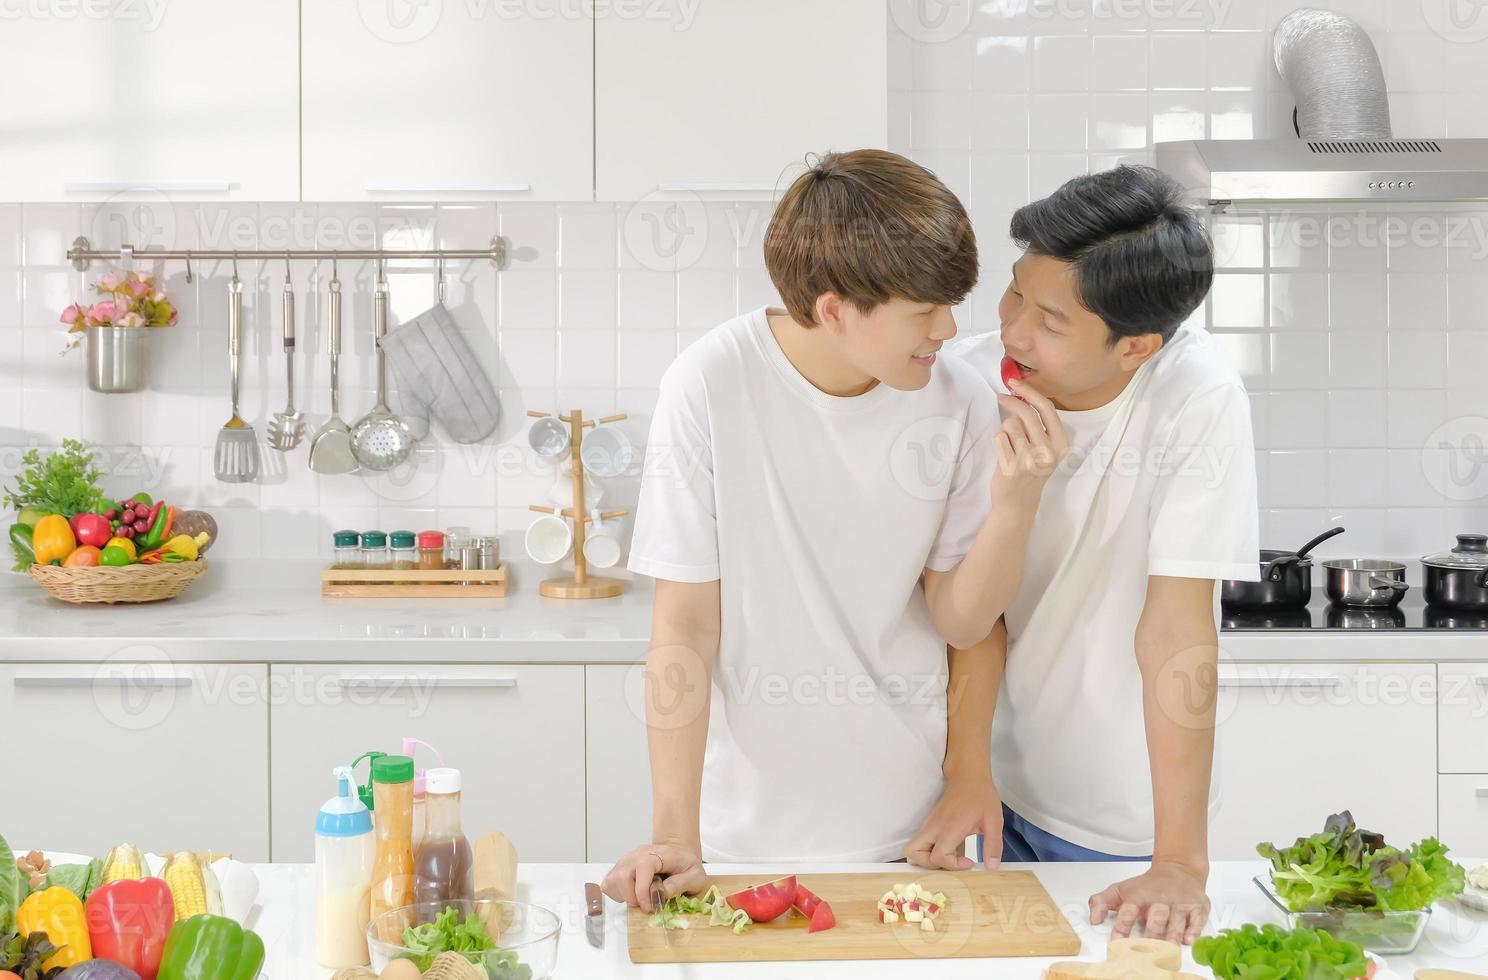 couple de jeunes hommes asiatiques intimes ayant un moment romantique ensemble dans la cuisine pendant la cuisson. concept de vie domestique lgbt. mise au point sélective. photo